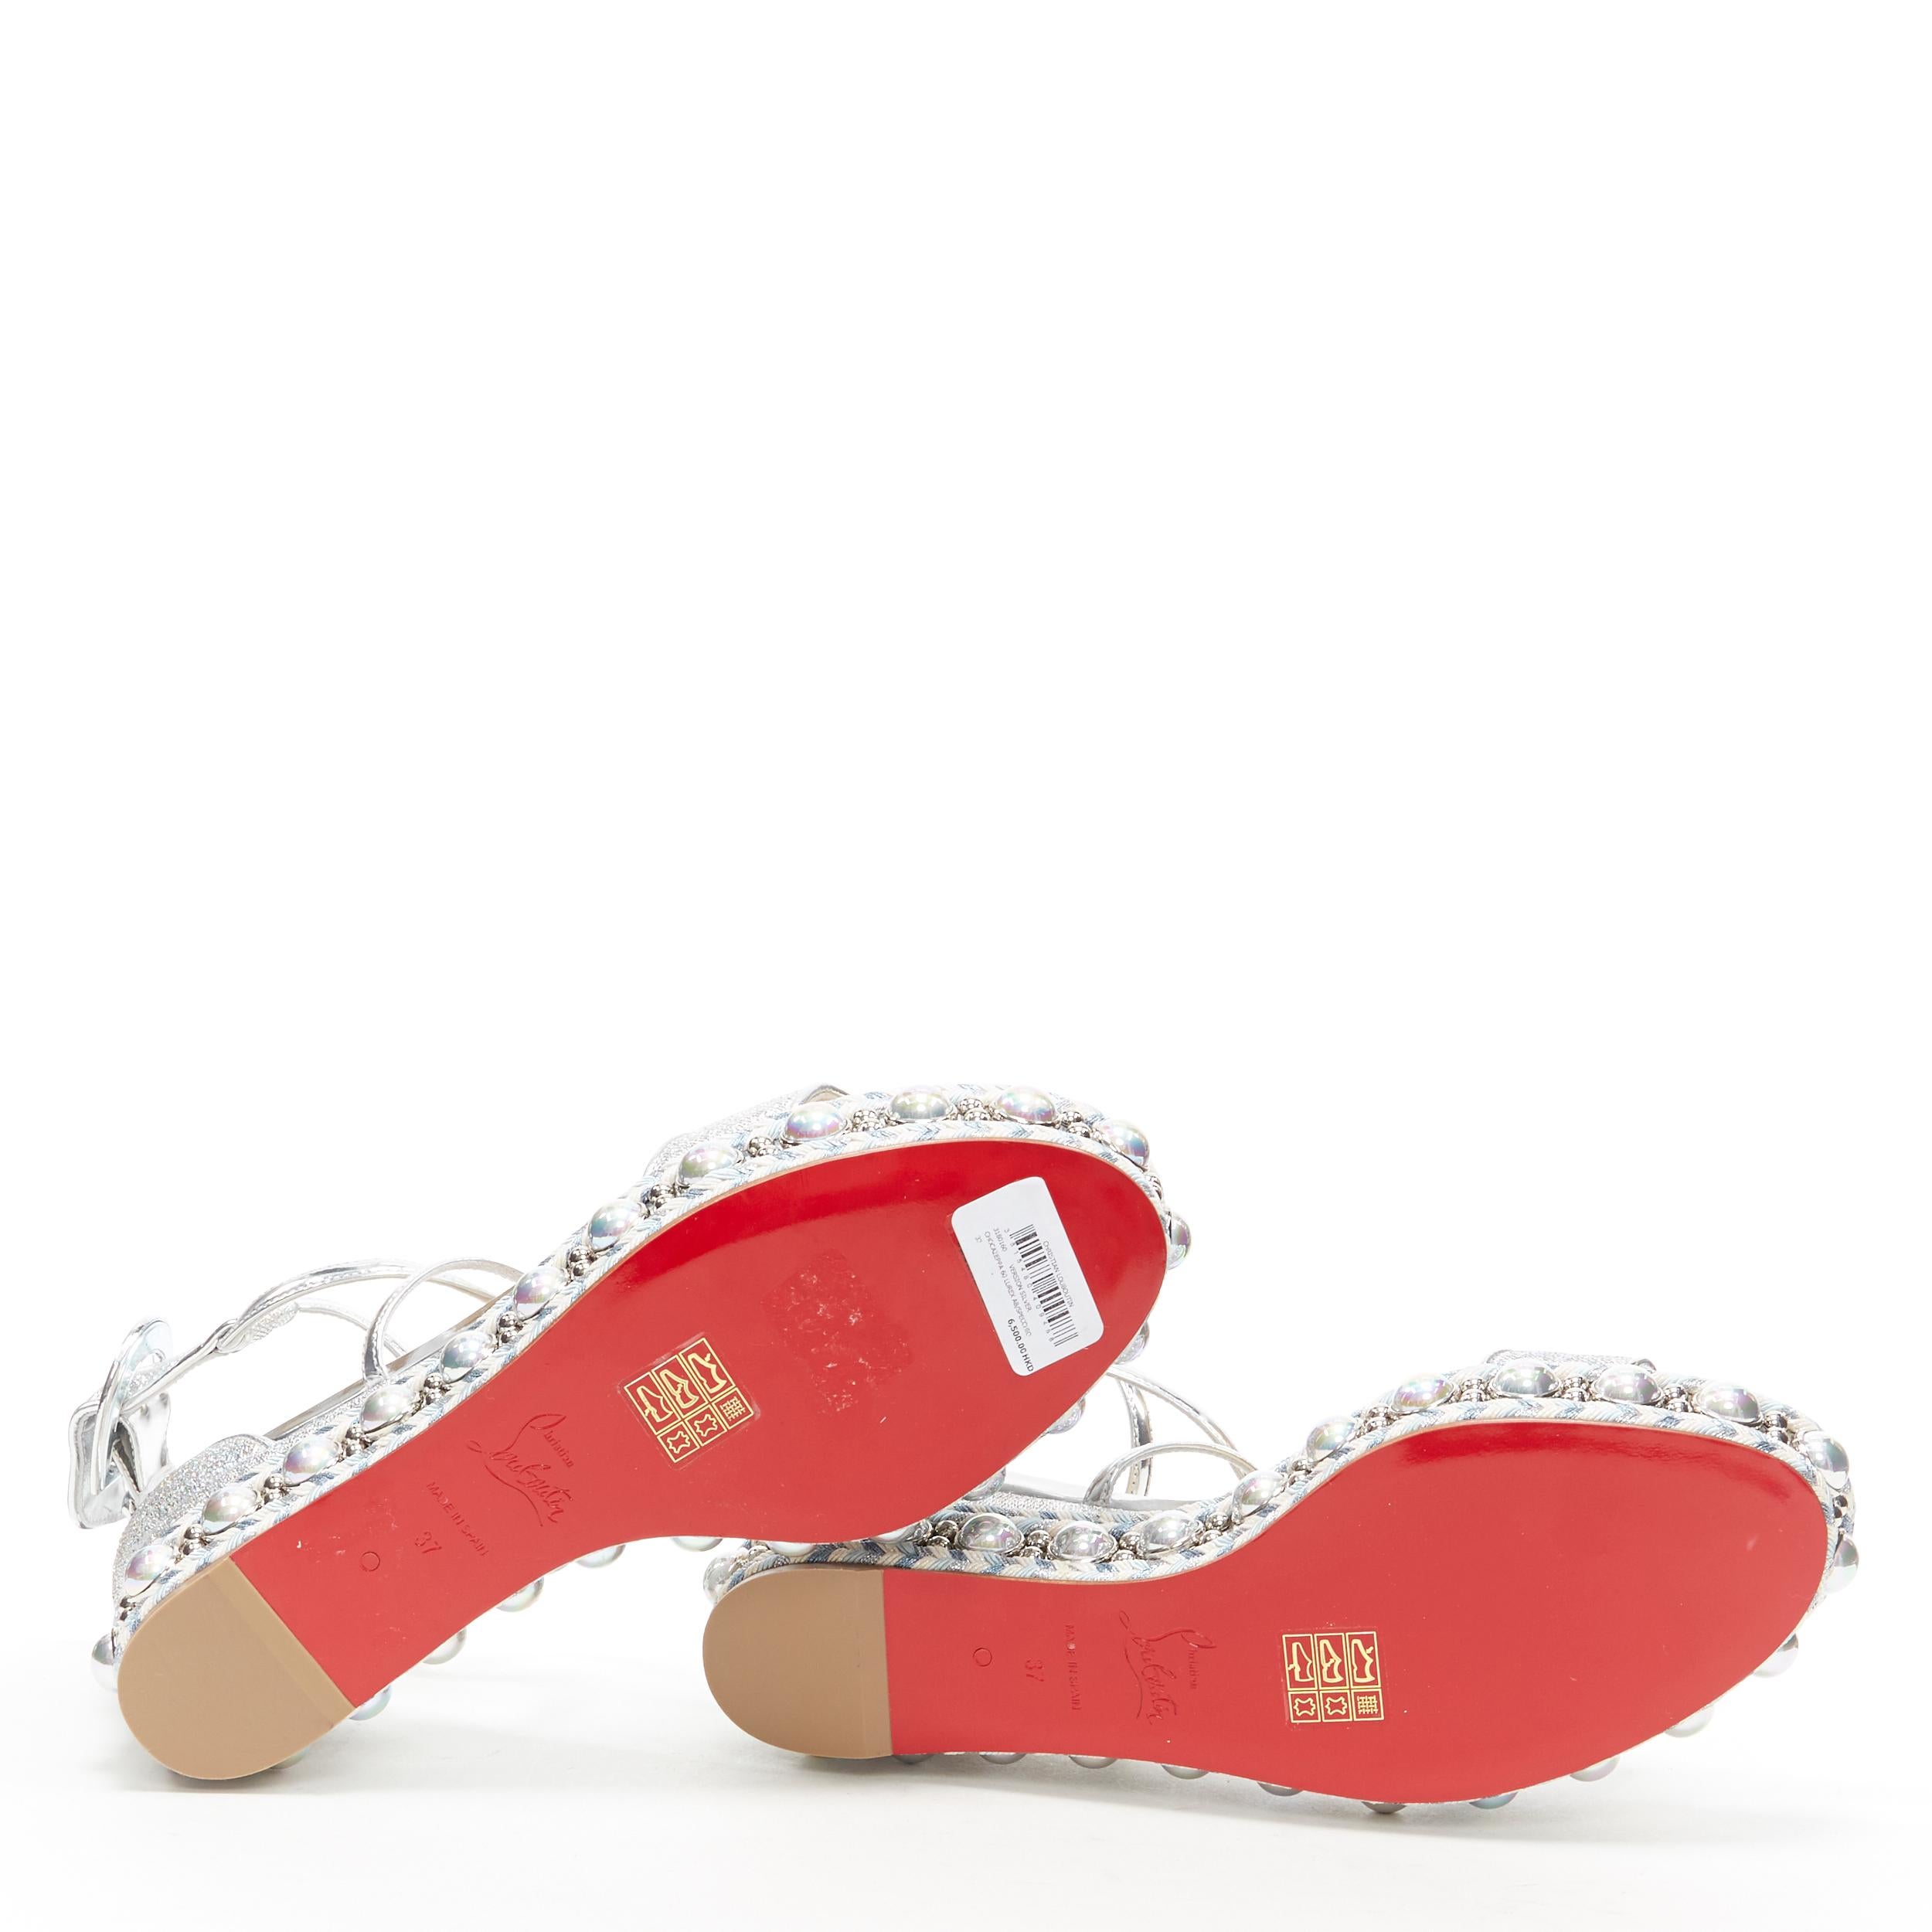 Women's new CHRISTIAN LOUBOUTIN Chocazeppa 60 silver lurex studded platform sandals EU37